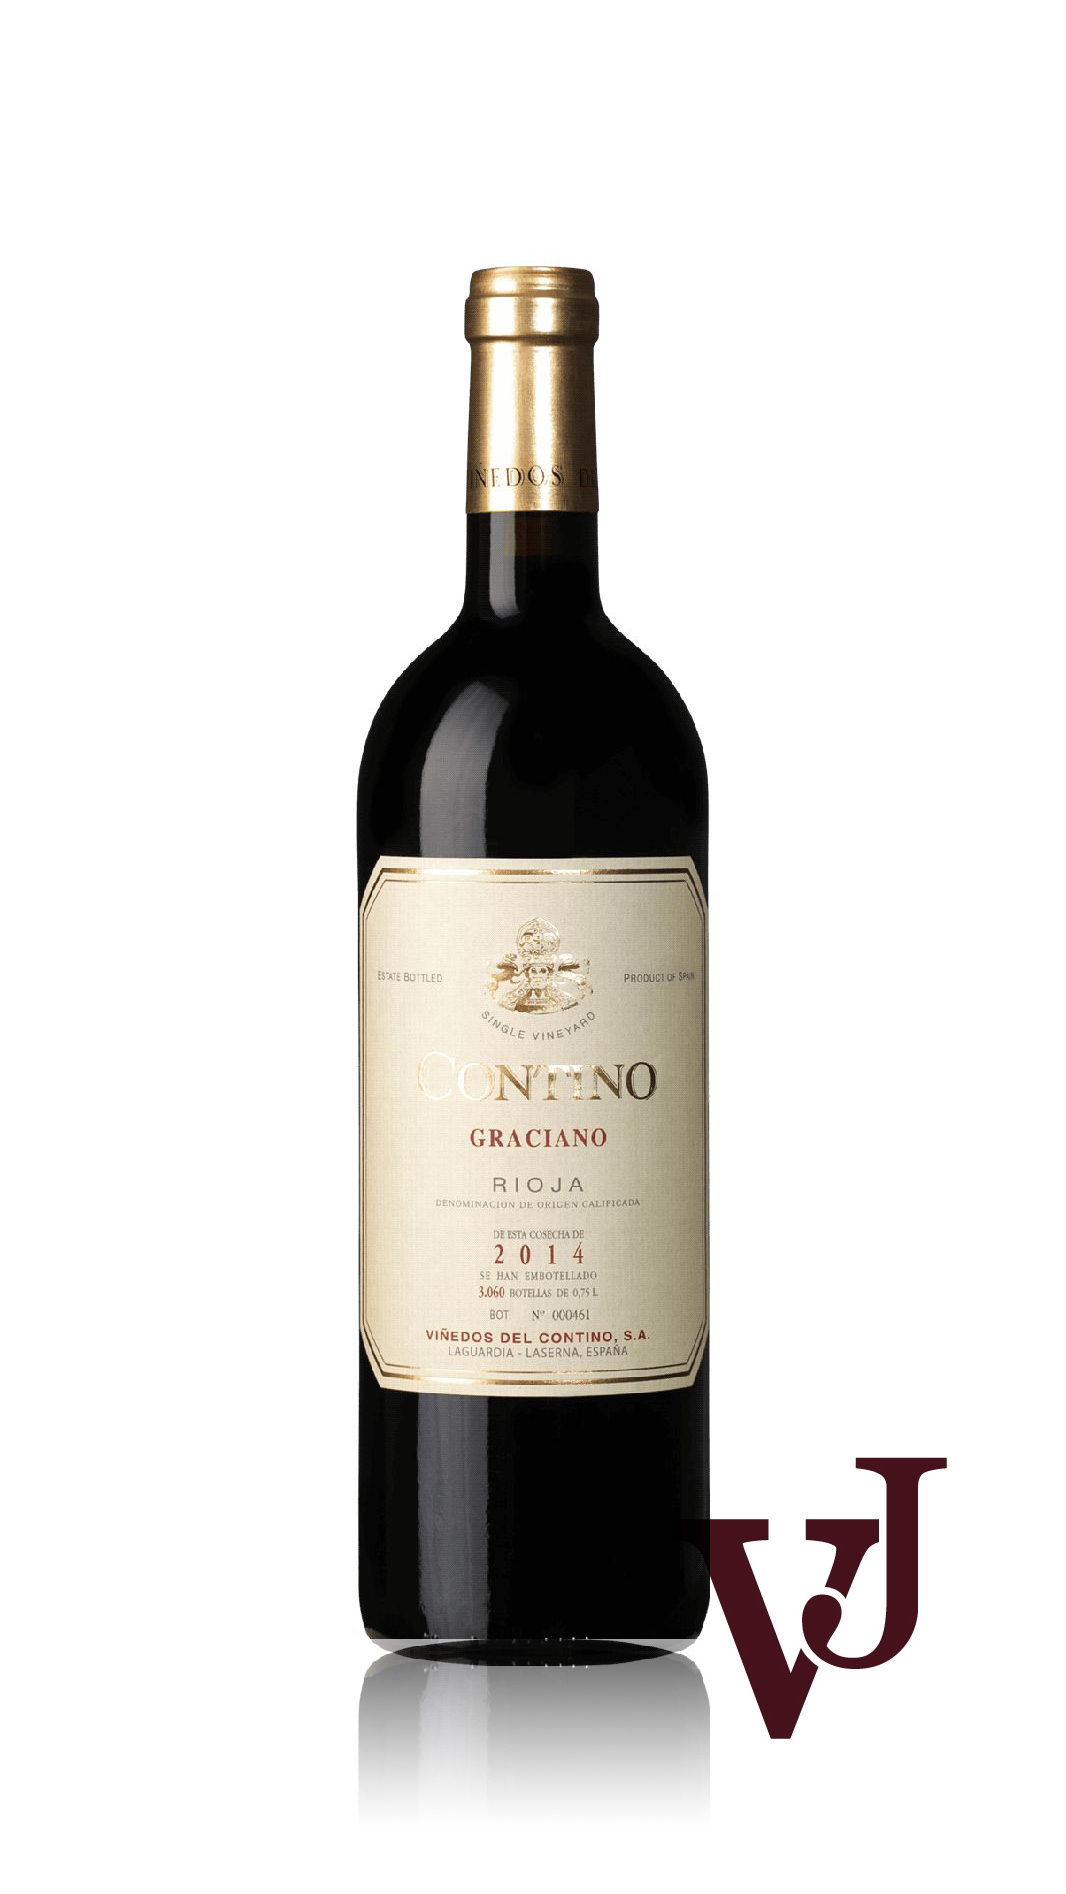 Rött Vin - Contino Graciano artikel nummer 9554101 från producenten Viñedos del Contino från området Spanien